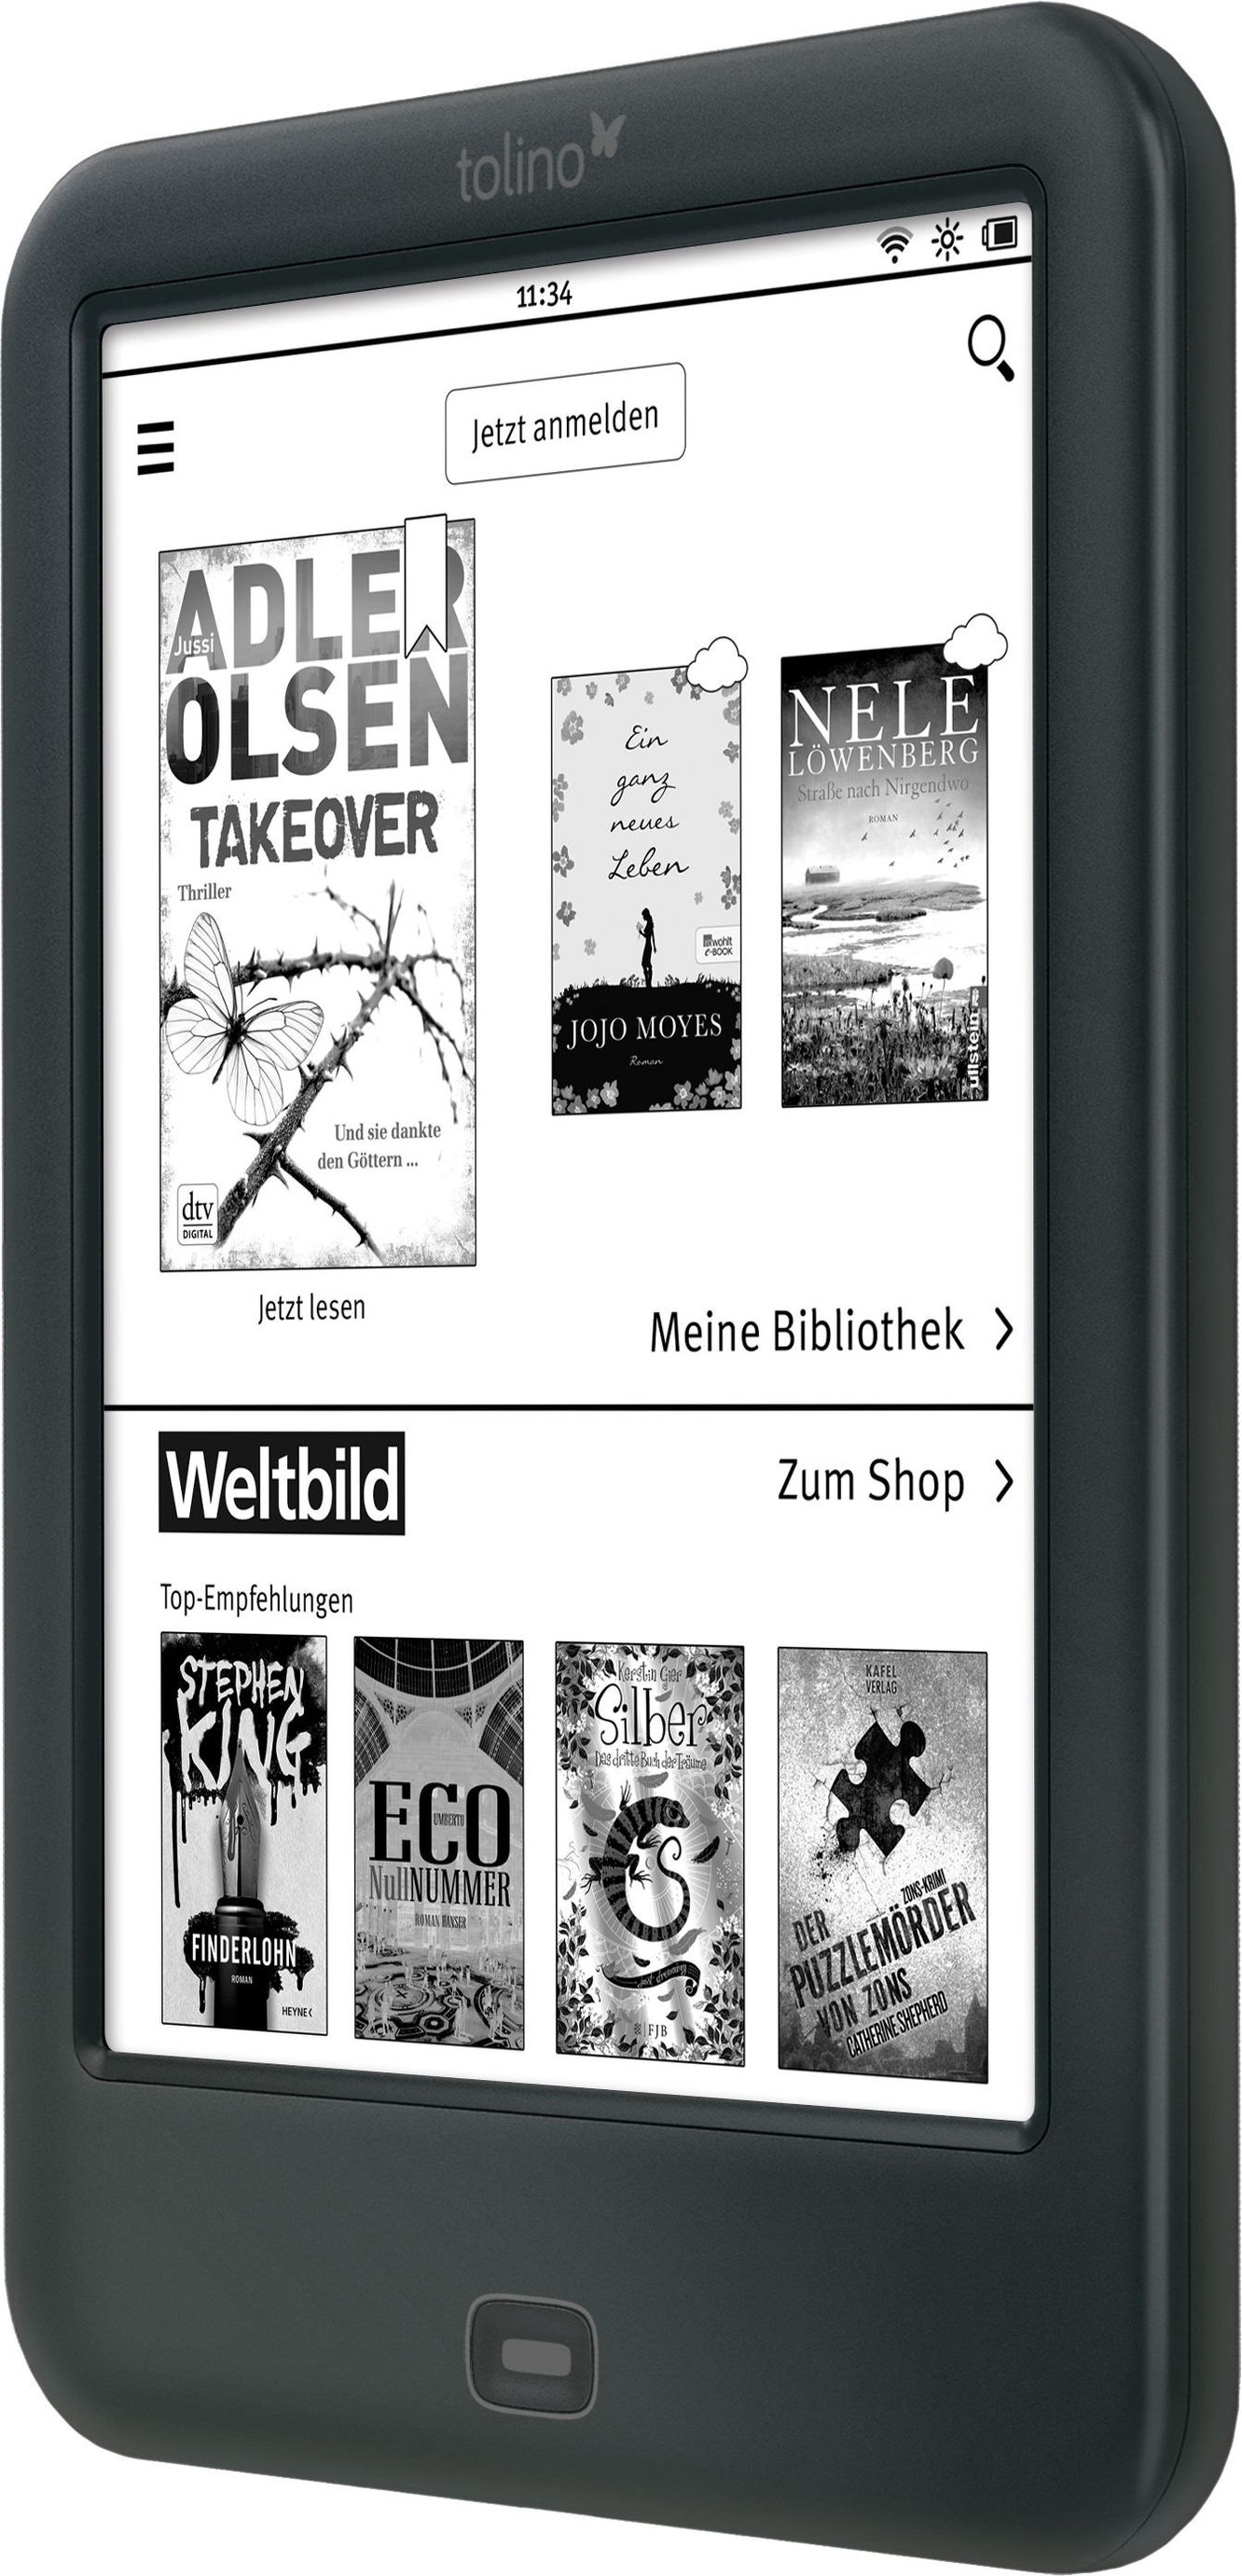 tolino shine 2 HD eBook-Reader jetzt bei Weltbild.ch bestellen